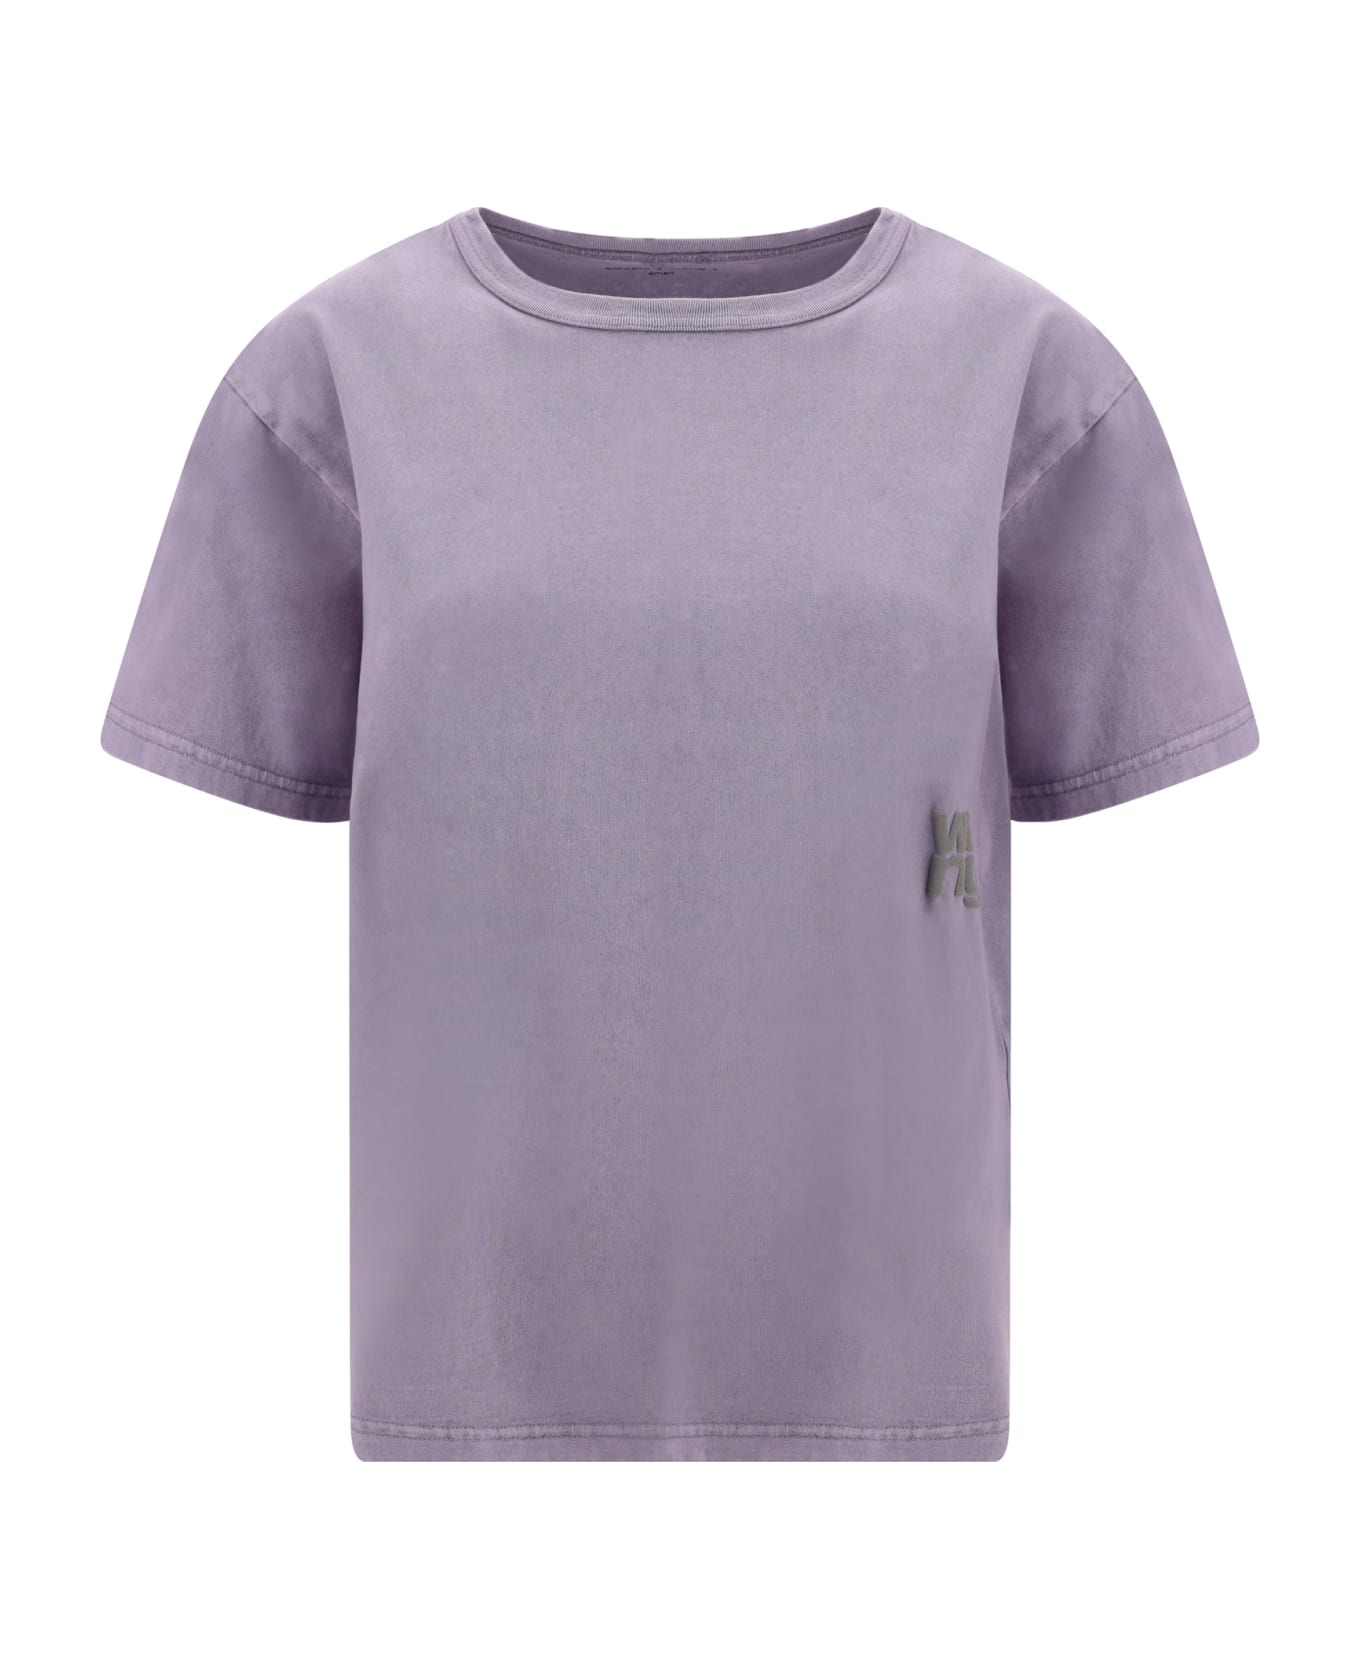 Alexander Wang Essential T-shirt - A Acid Pink